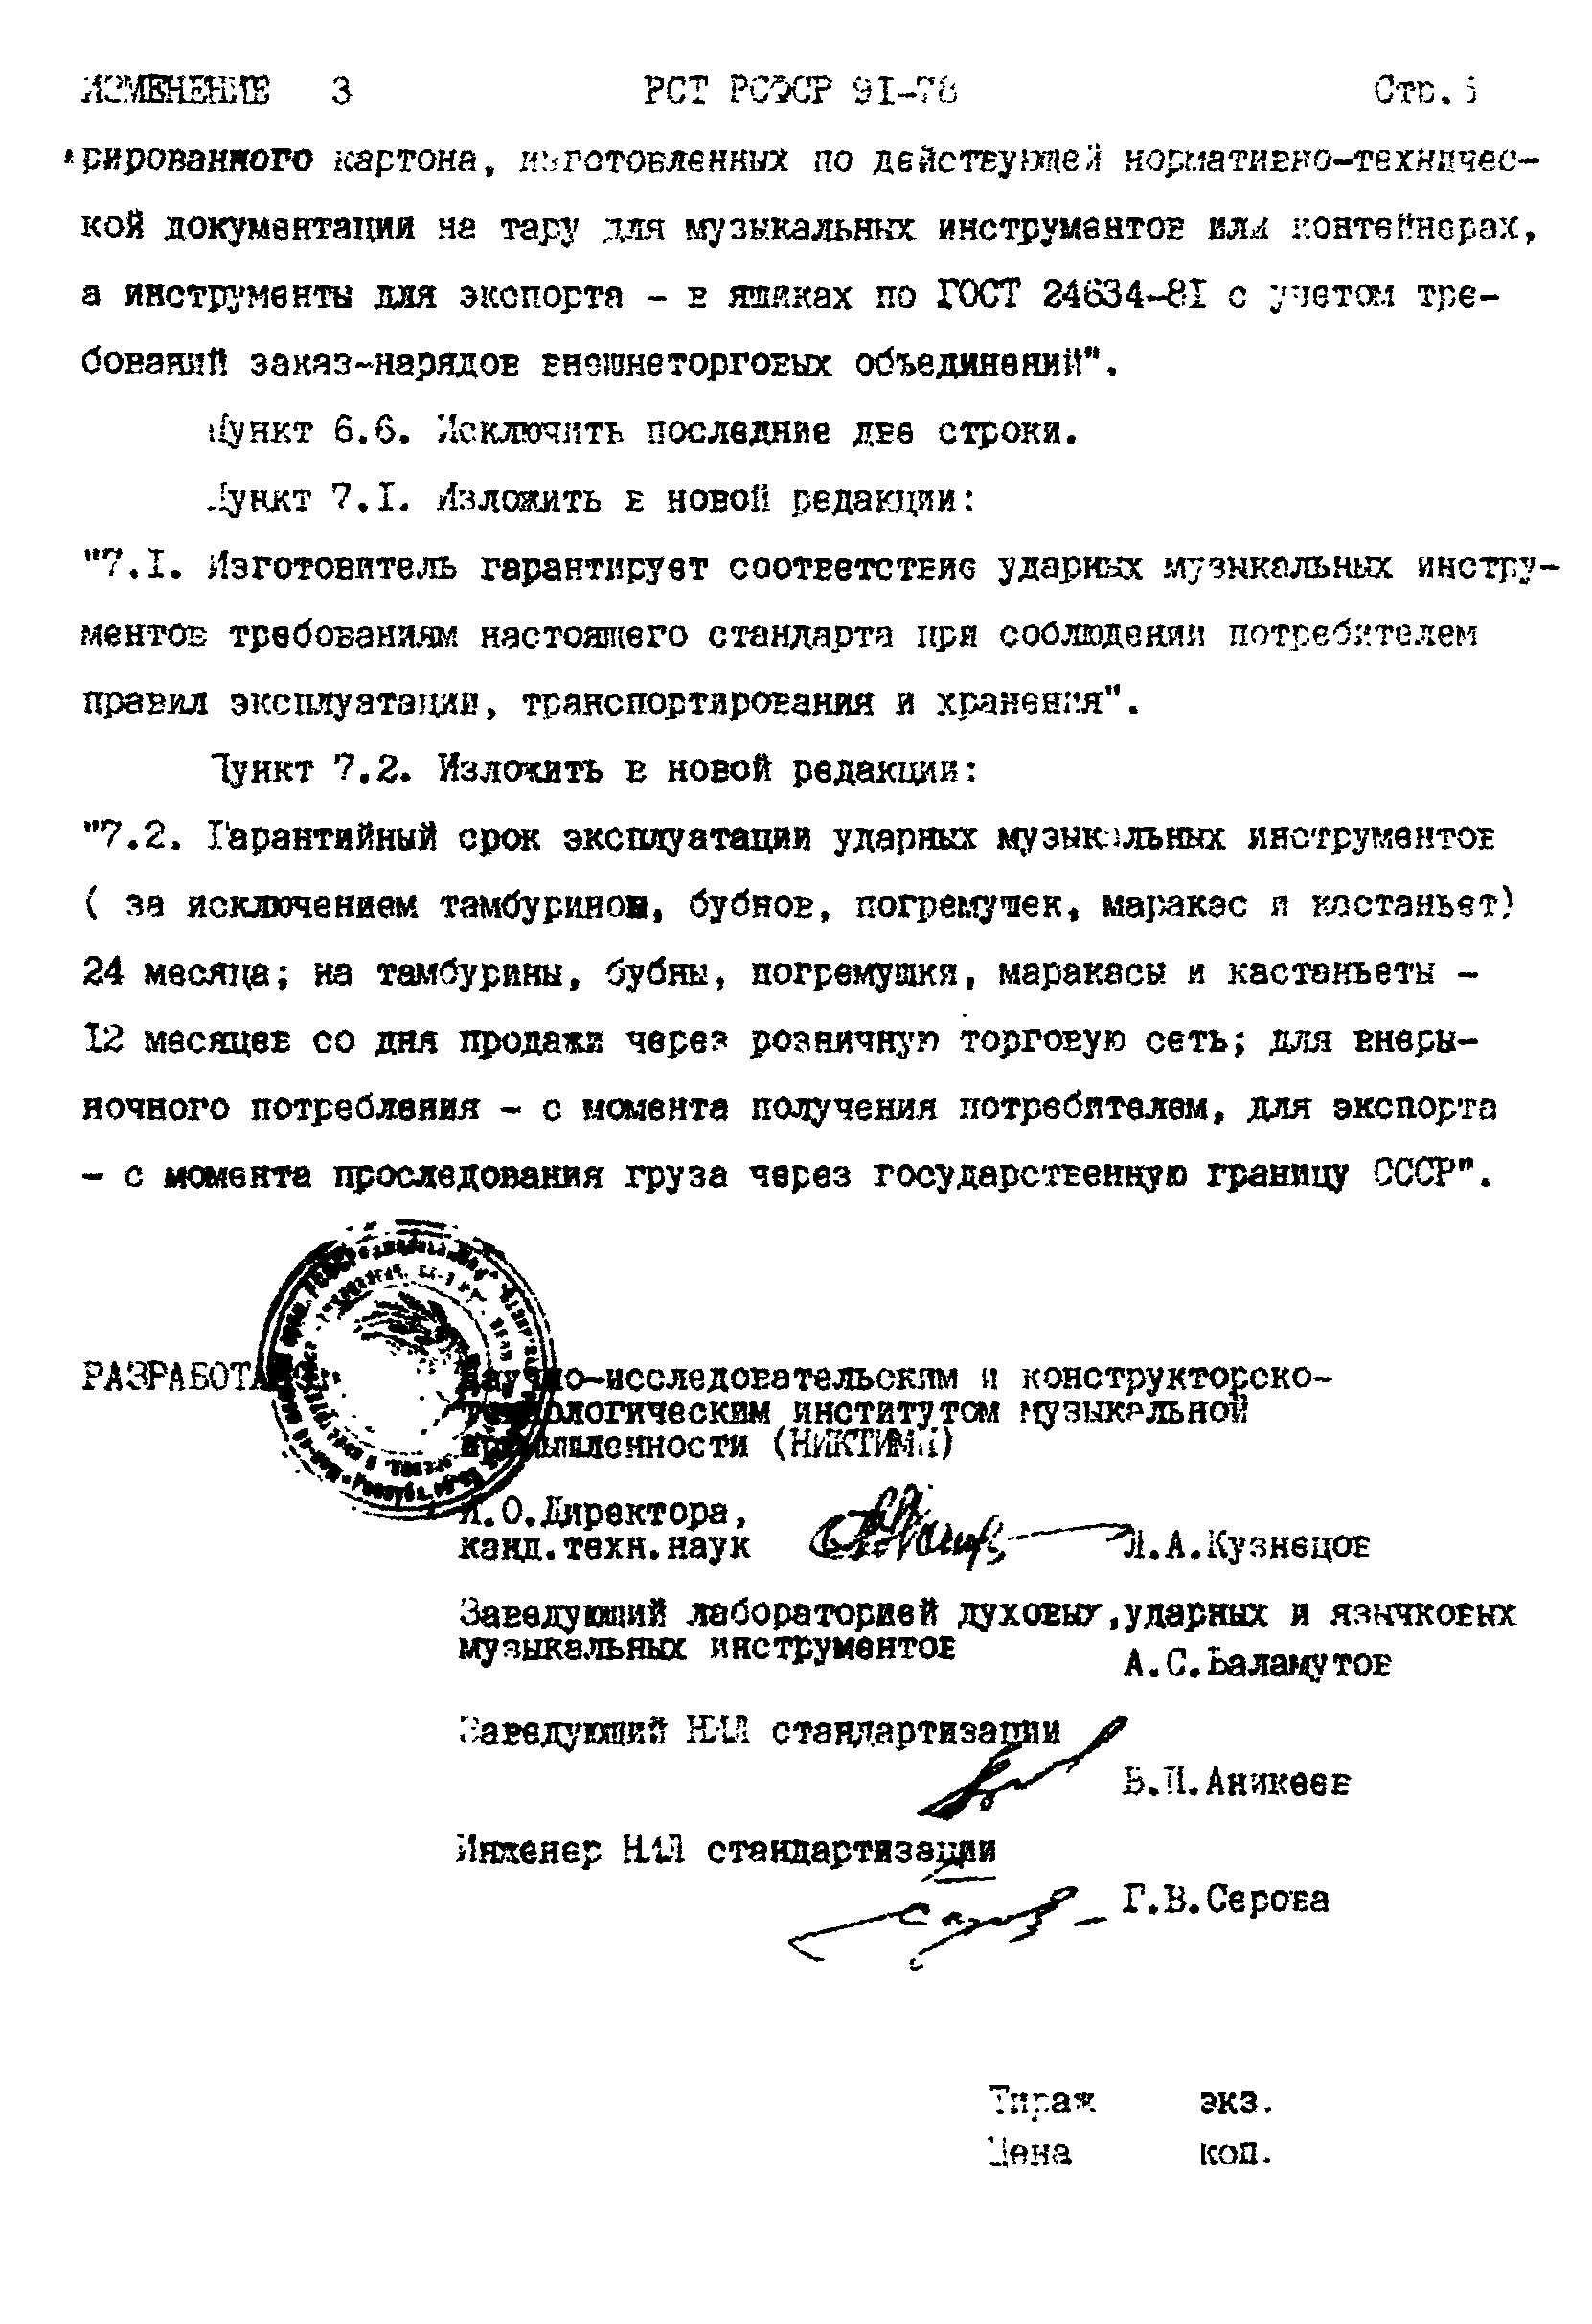 РСТ РСФСР 91-78